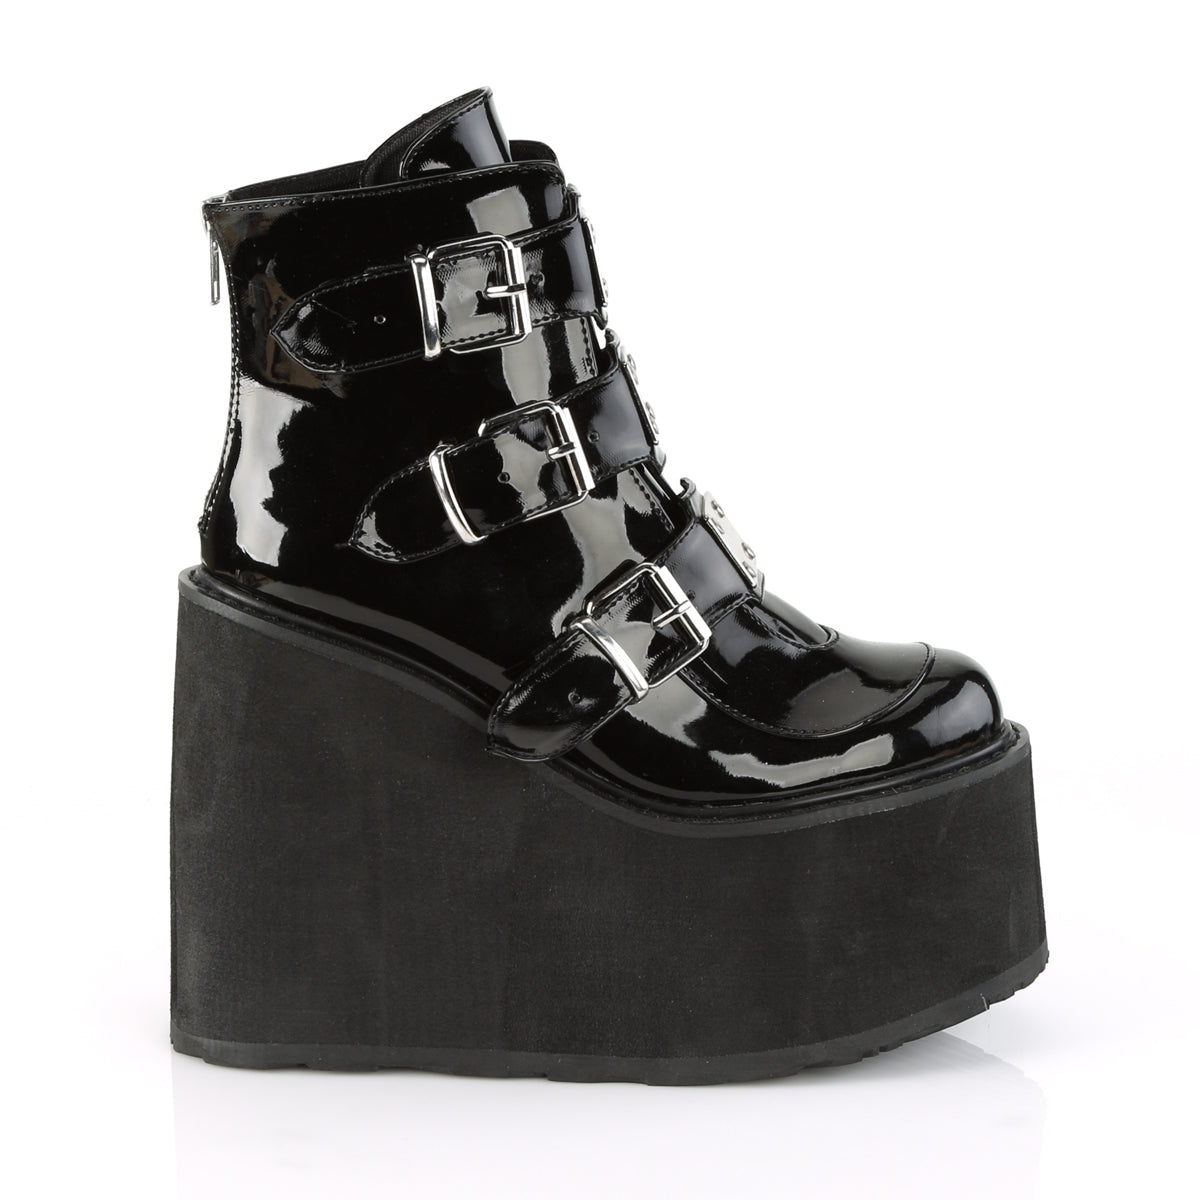 SWING-105 Demonia Black Patentent Women's Ankle Boots [Demonia Cult Alternative Footwear]